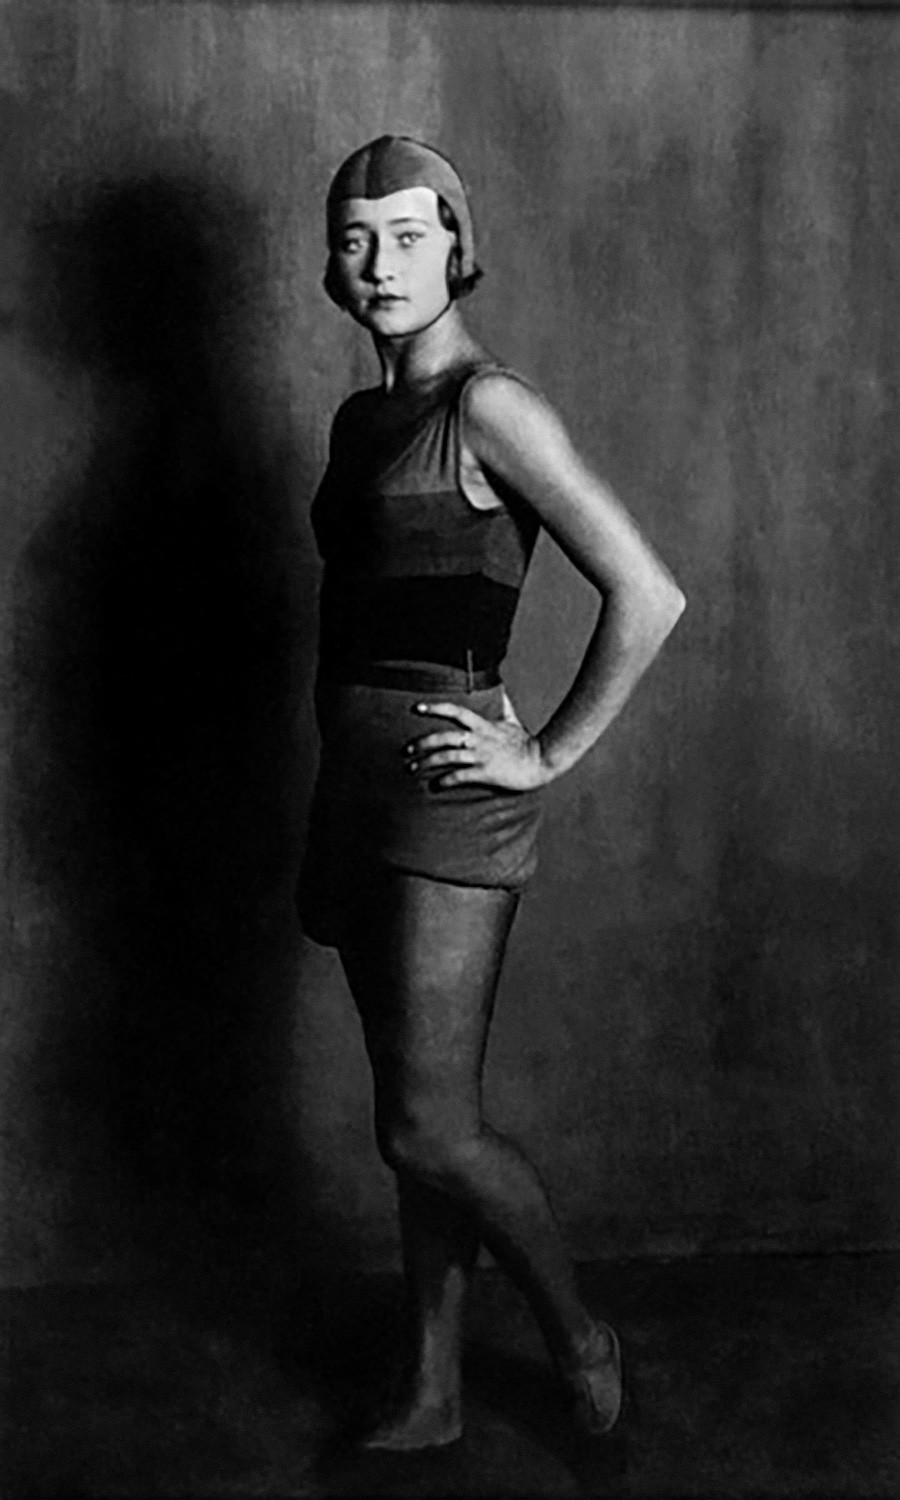 ドミトリー・ショスタコーヴィチの音楽によるバレエ「黄金時代」でコムソモールの女の子の役を演じるガリーナ・ウラノワ、1930年